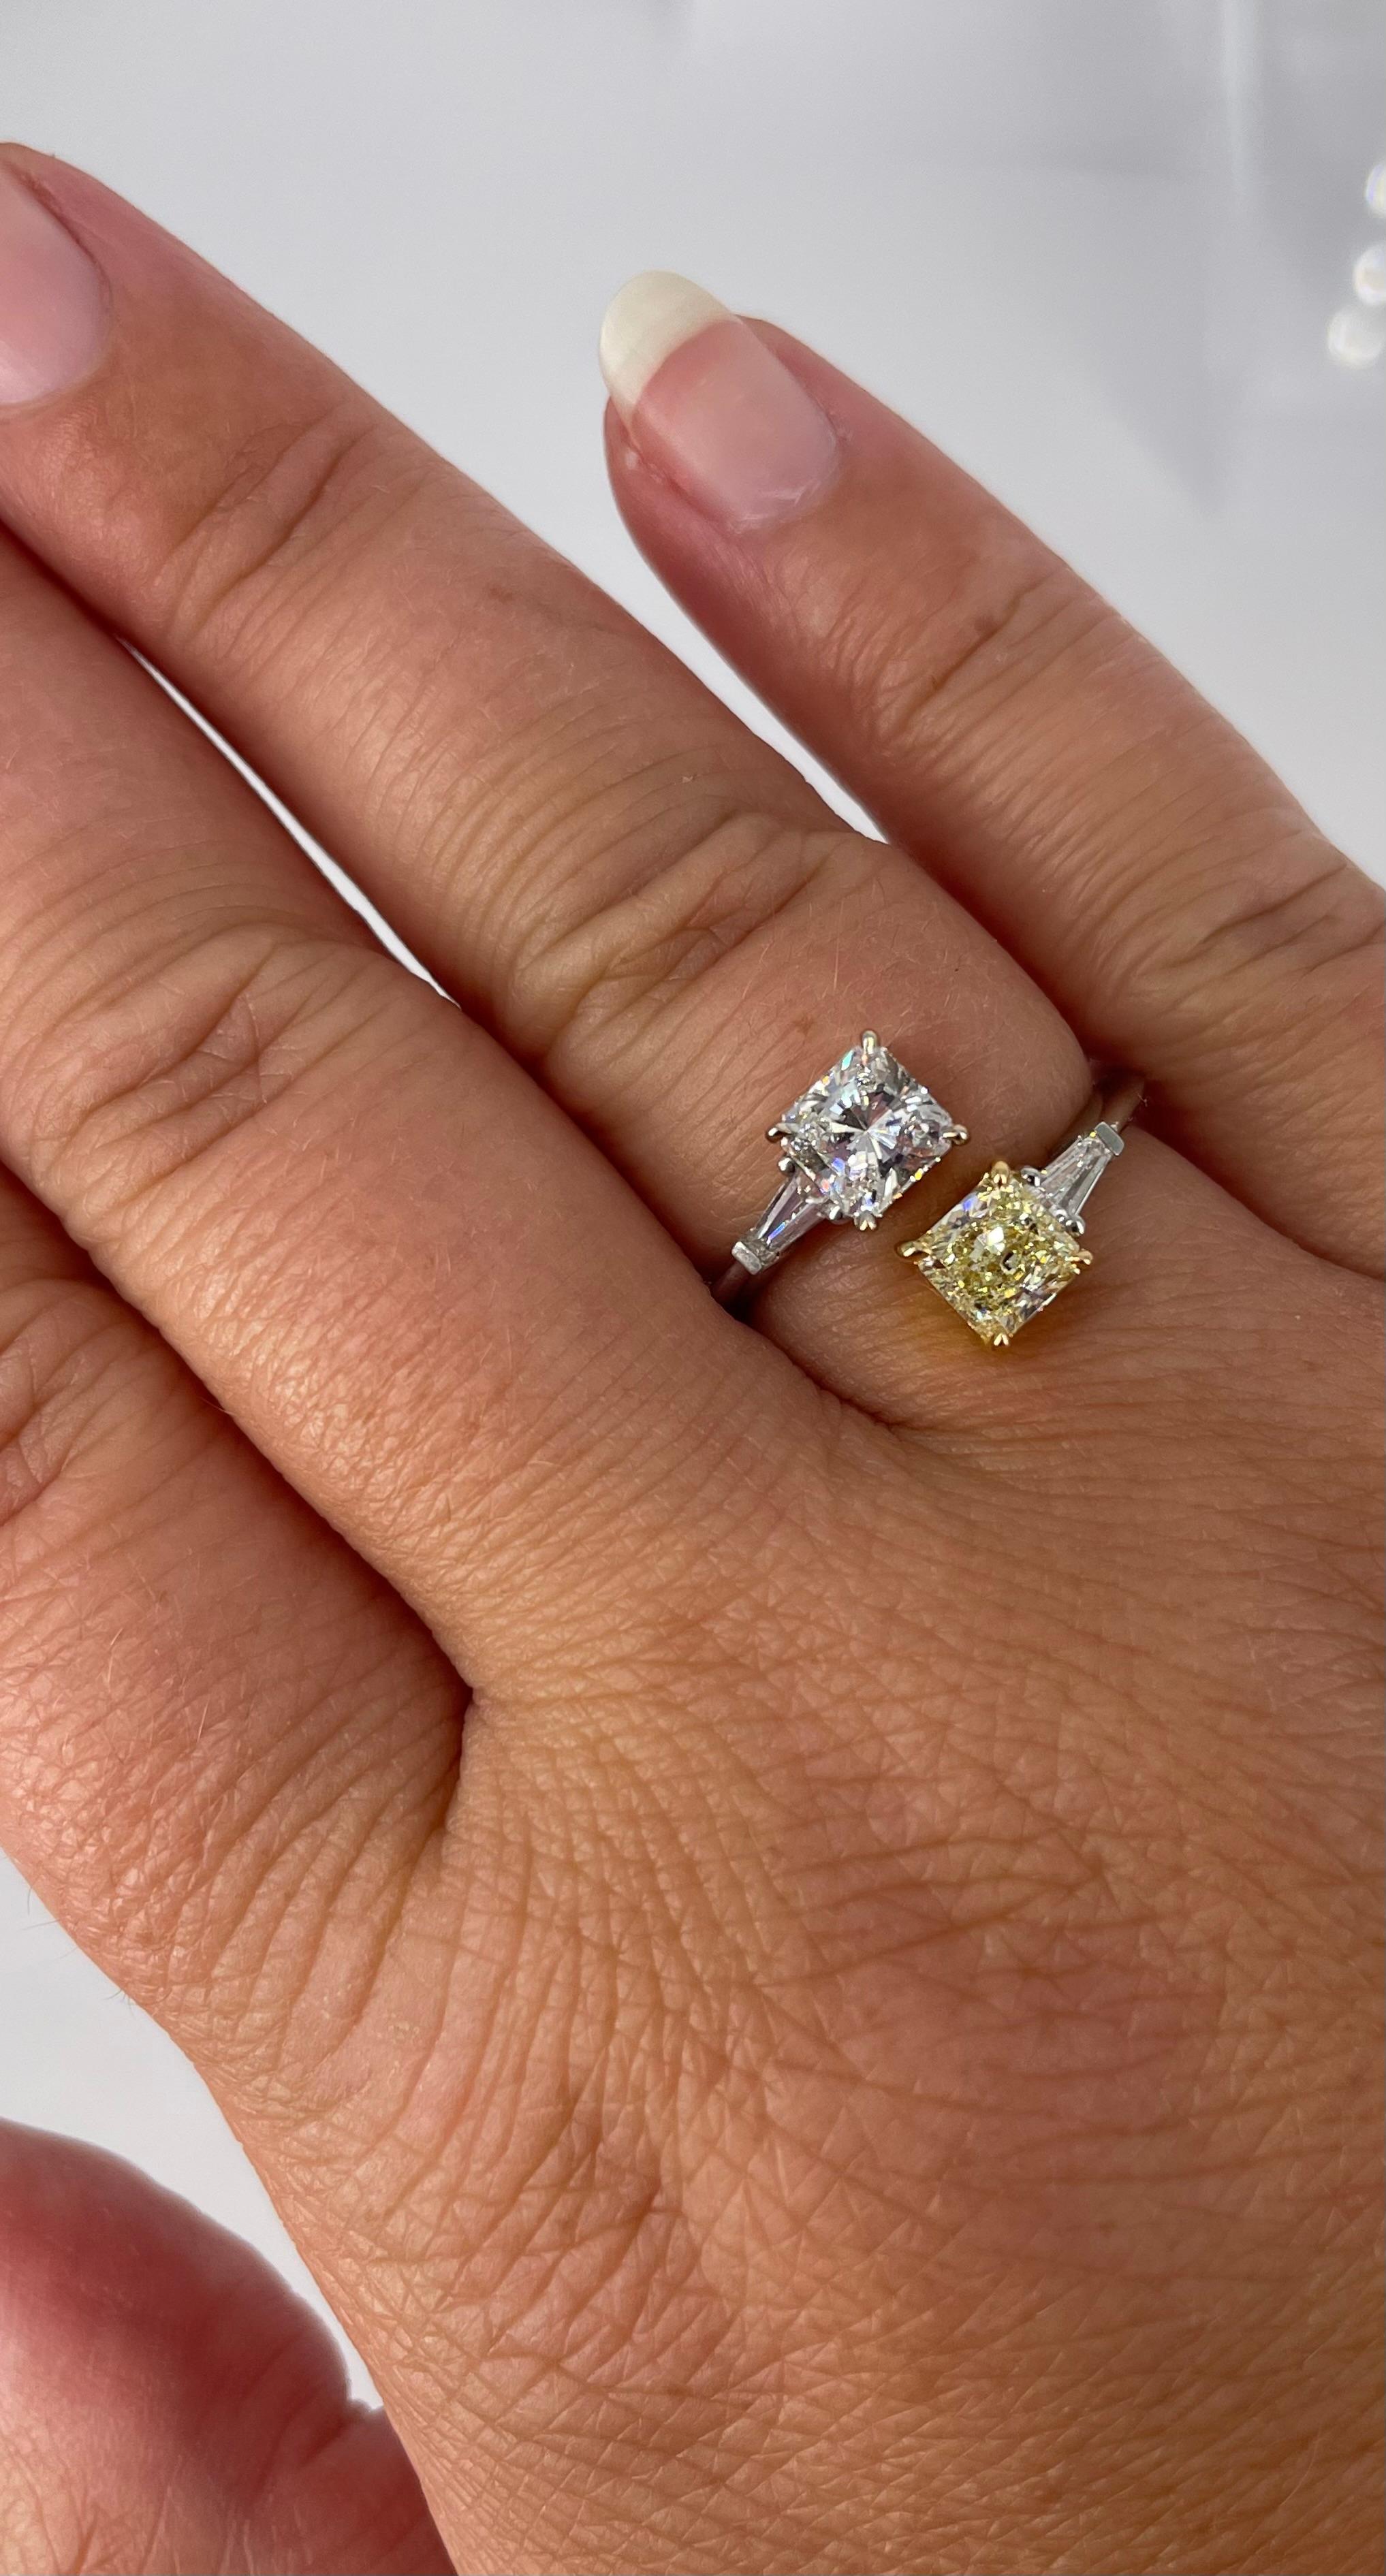 Eine elegante und einzigartige Variante des Zwei-Steine-Rings! Dieser atemberaubende Toi et Moi Ring passt zu jedem Finger und könnte auch als einzigartiger Verlobungsring dienen. Das Schmuckstück besteht aus einem weißen Diamanten im